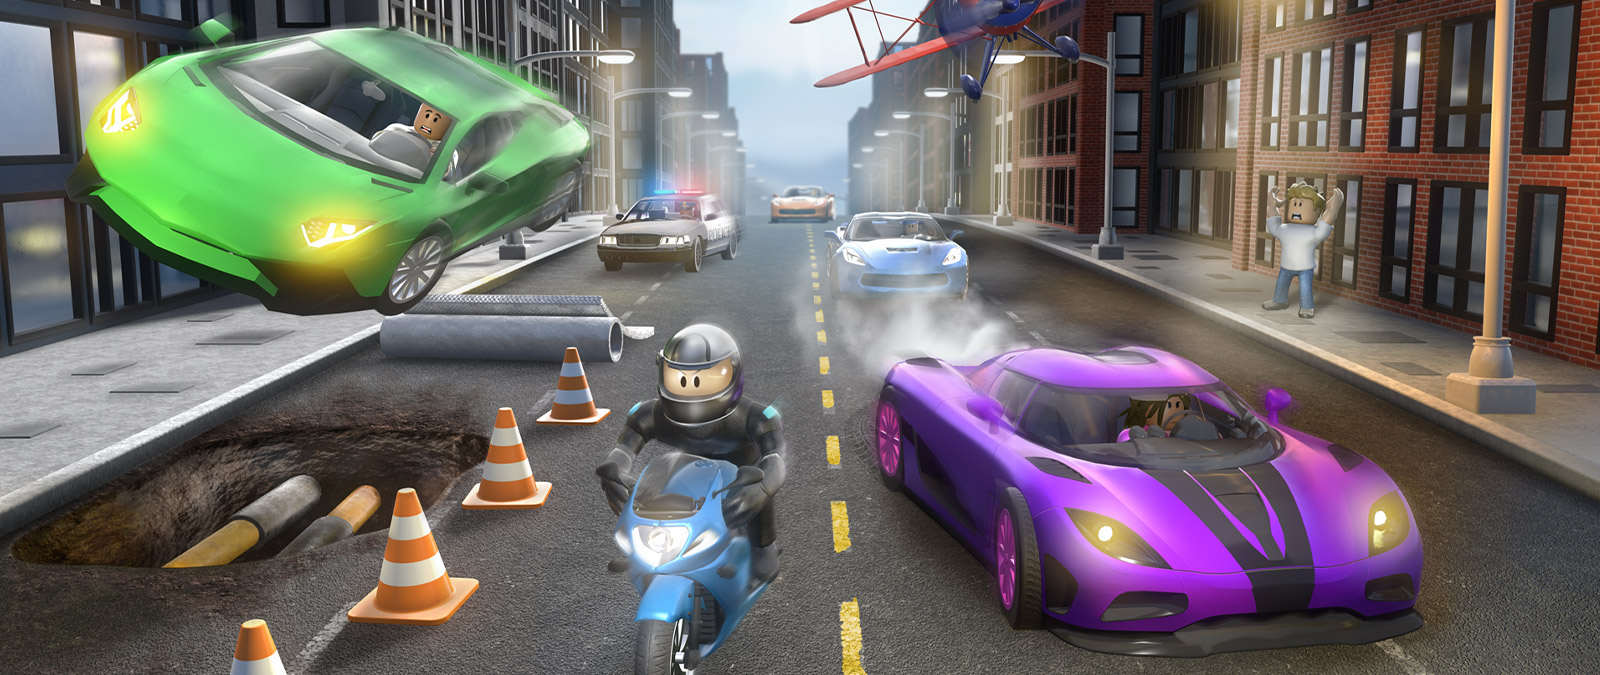 Roblox Vehicle Simulator -hahmo ajaa moottoripyörällä, jota muut ajoneuvot jahtaavat kaupungin kadulla